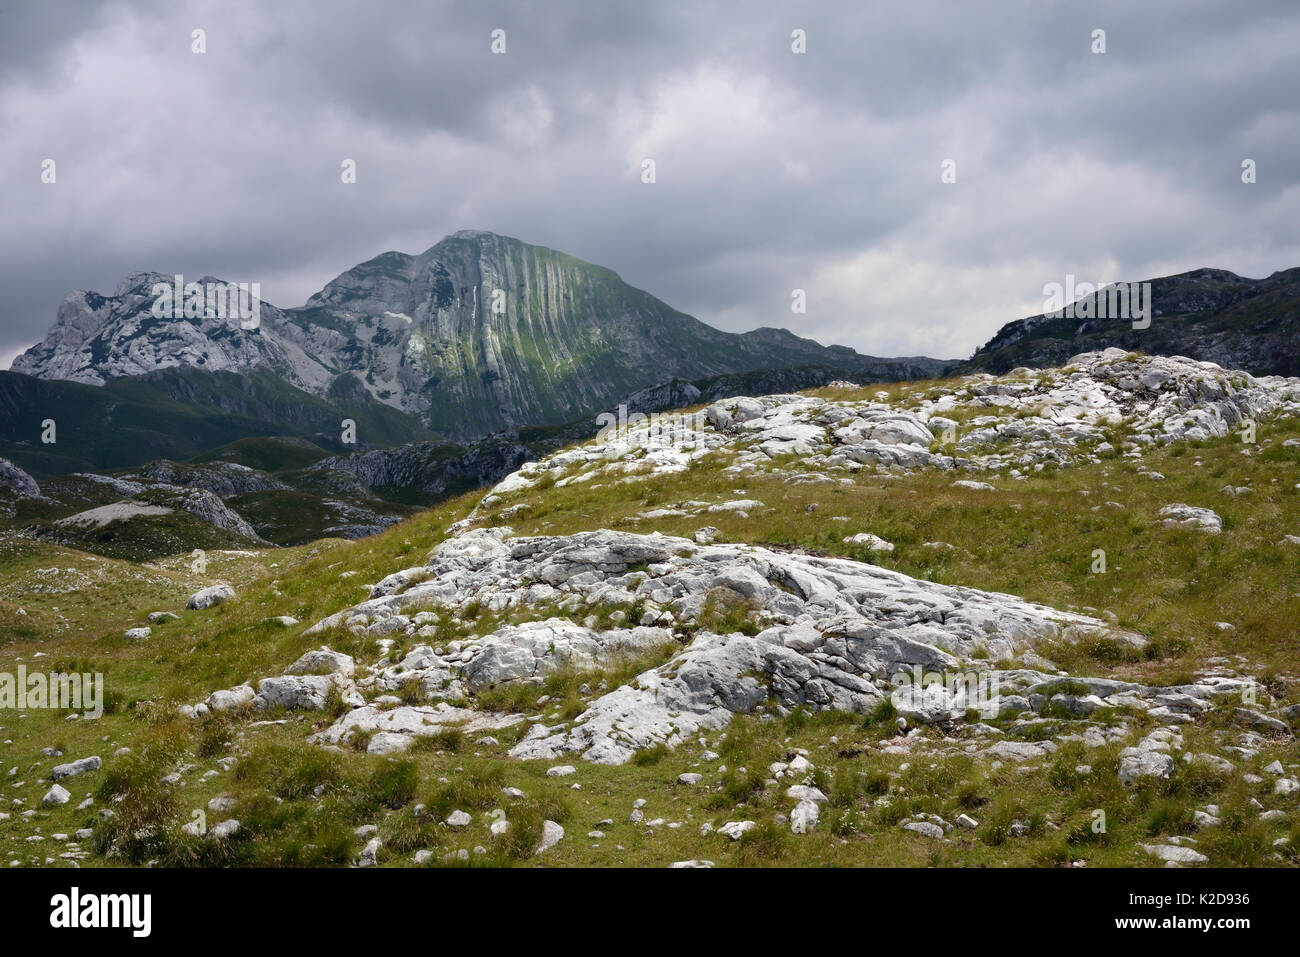 Les roches calcaires et les couches de calcaire plié verticalement Prutas Mountain, parc national de Durmitor, Monténégro, juillet 2014. Banque D'Images